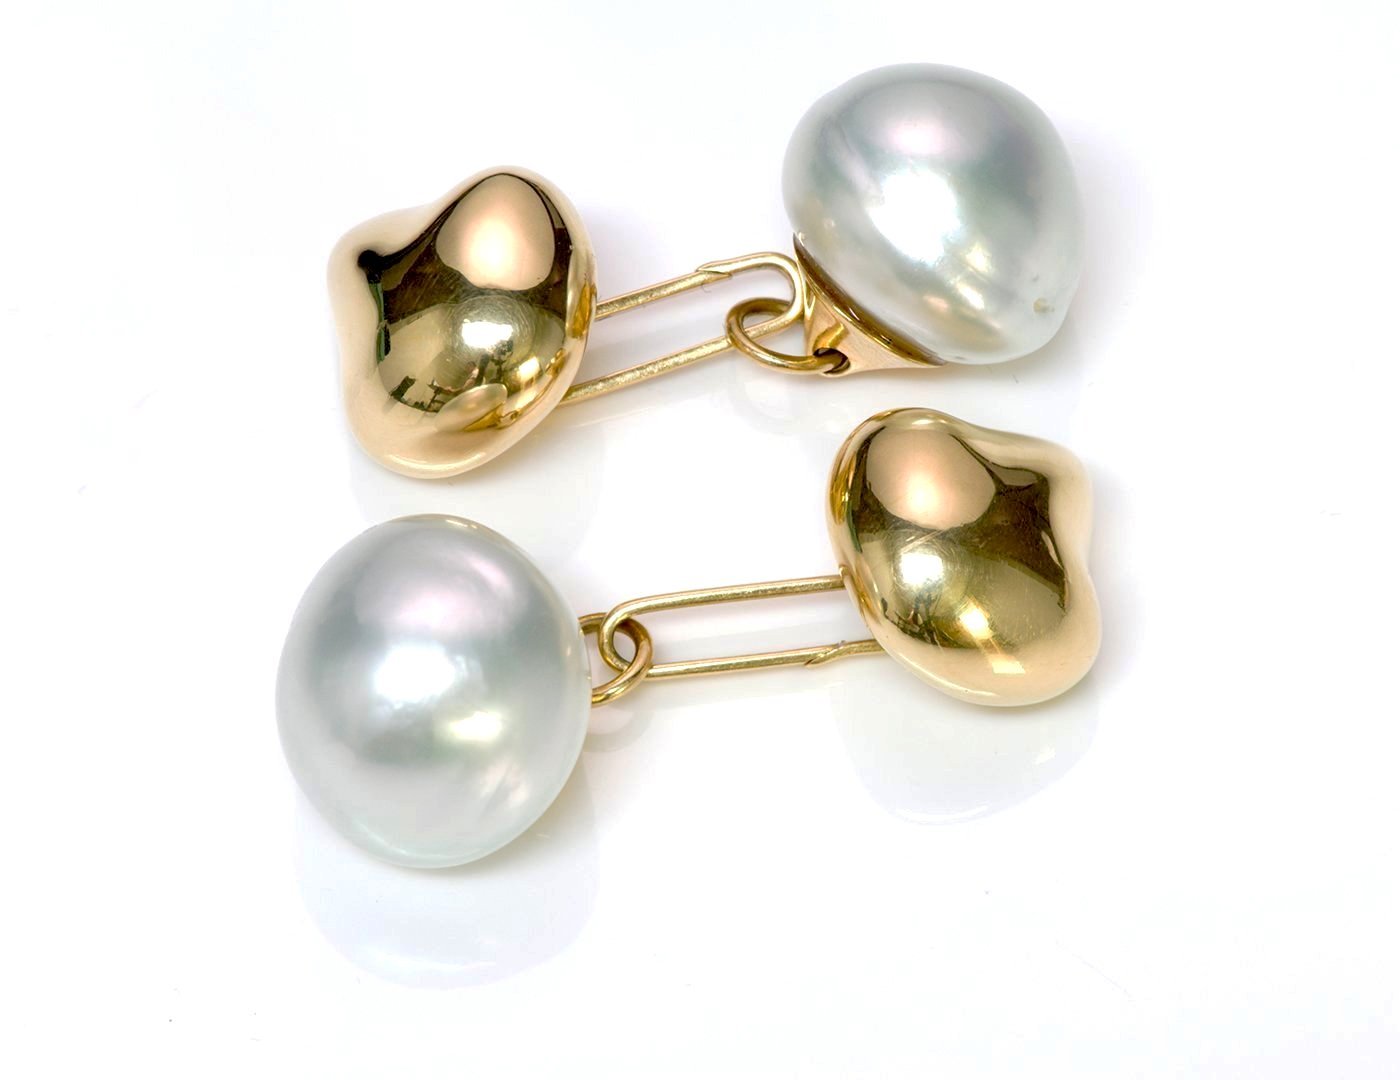 Tiffany & Co. Elsa Peretti Pearl Gold Cufflinks